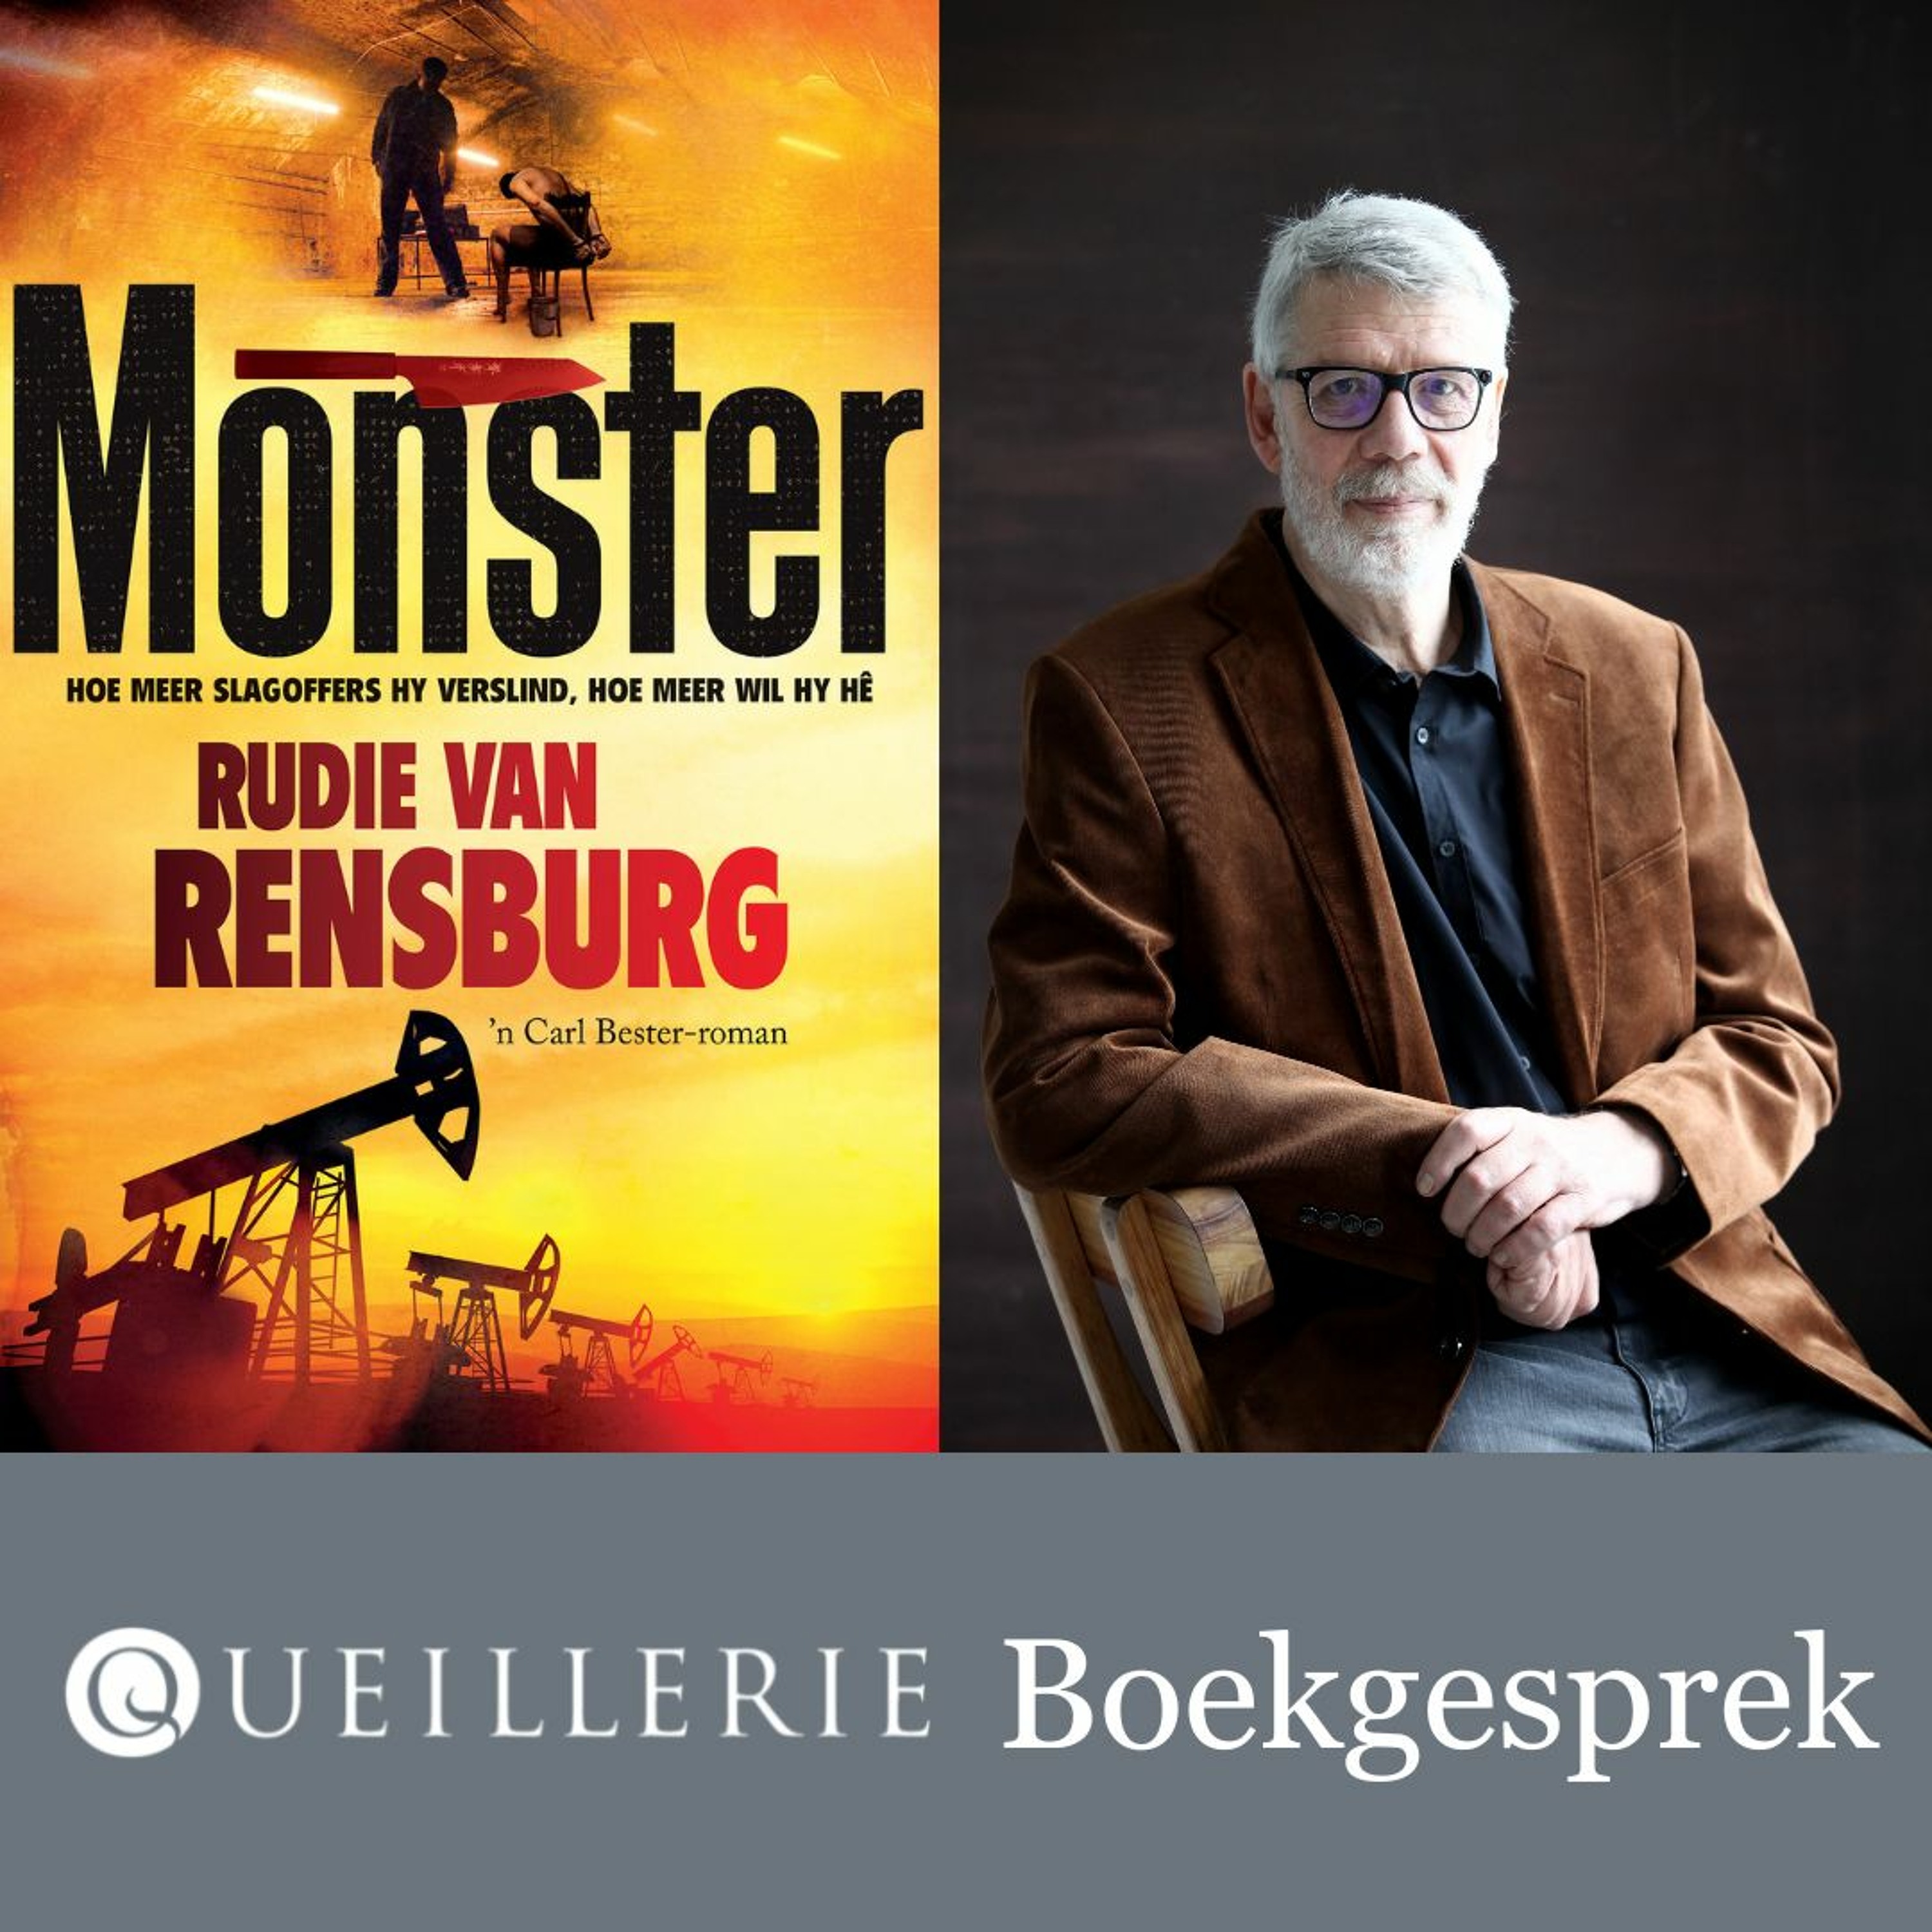 Queillerie-boekgesprek: Jonathan Amid gesels met Rudie van Rensburg oor sy boek Monster